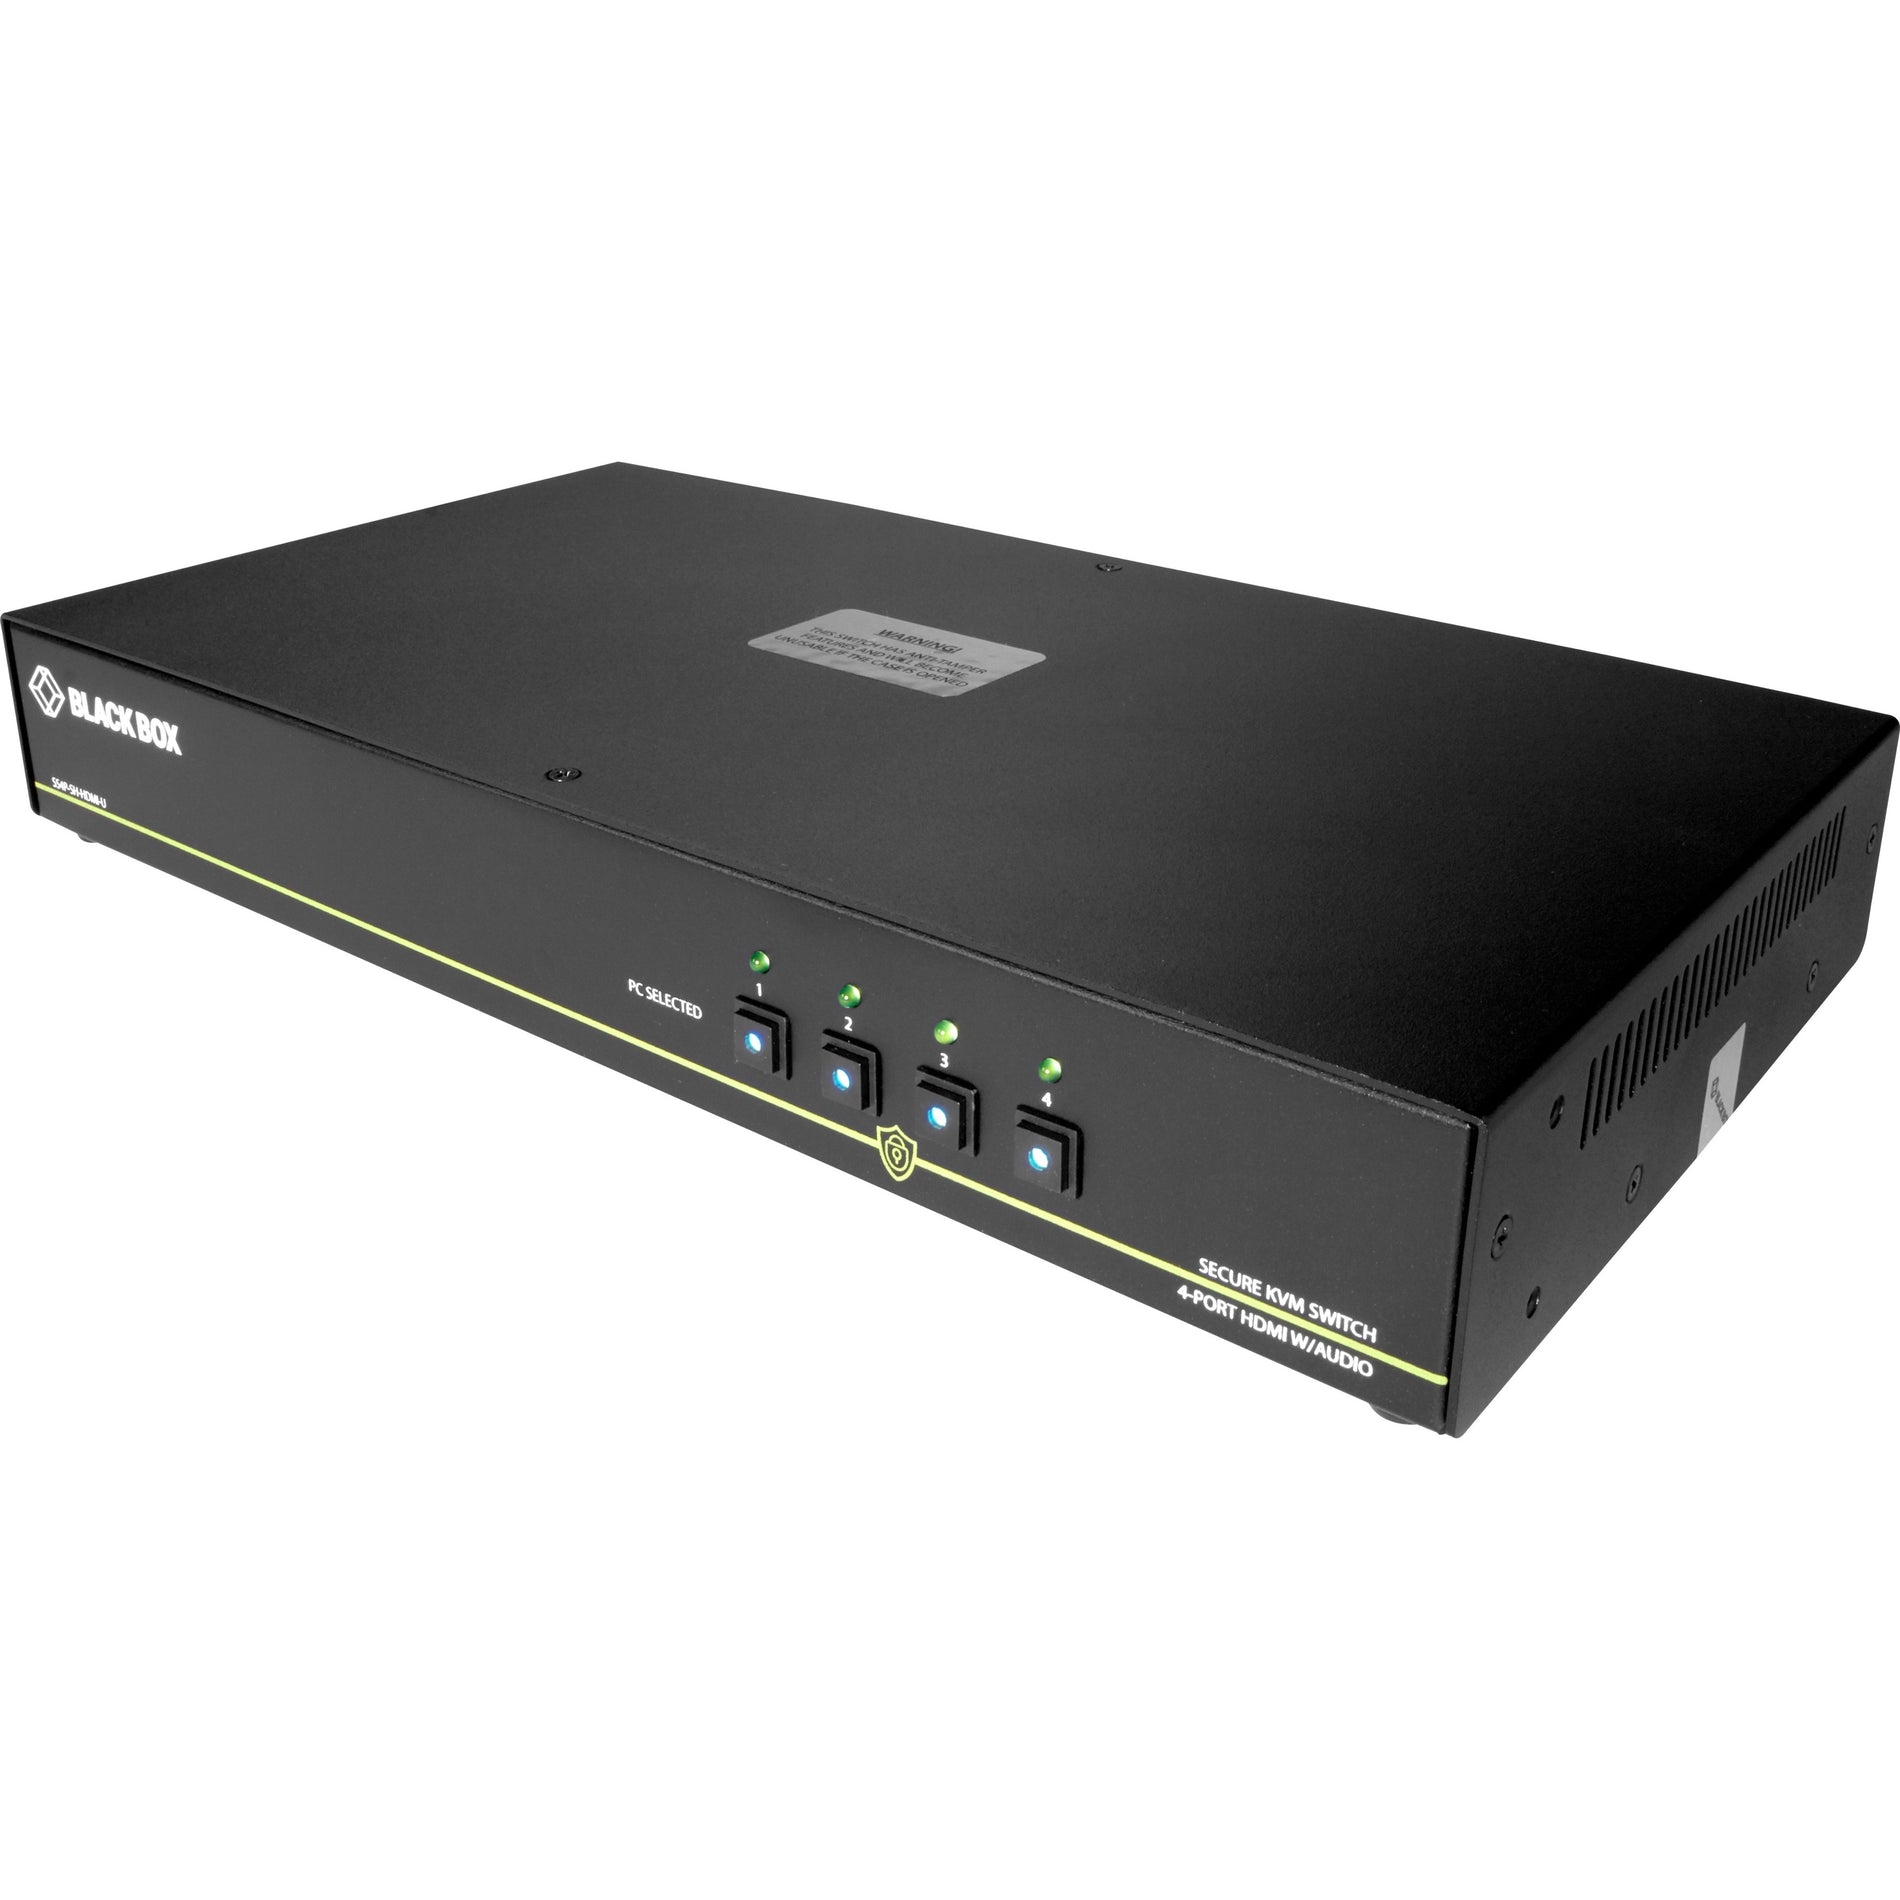 Black Box SS4P-SH-HDMI-U NIAP 3.0 Secure 4-Port Single-Head HDMI KVM Switch, 4K, TAA Compliant